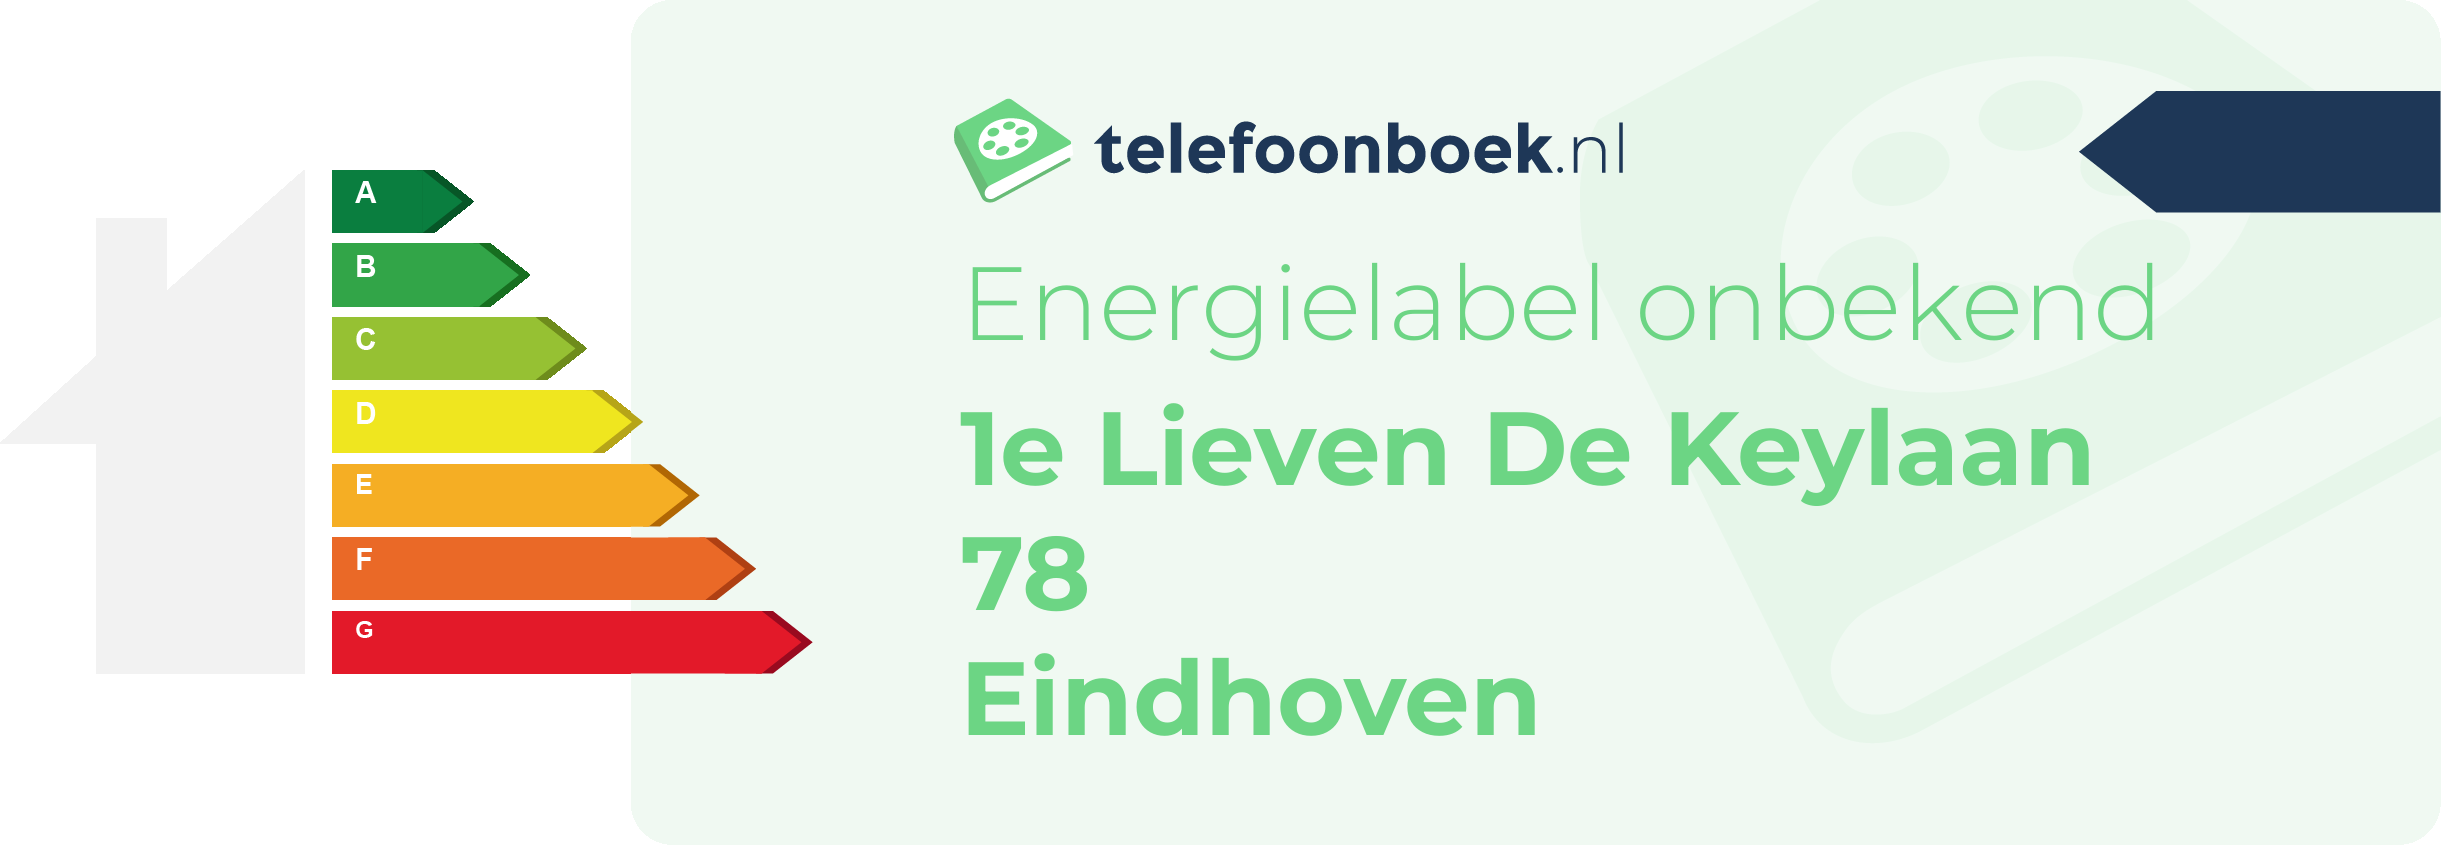 Energielabel 1e Lieven De Keylaan 78 Eindhoven